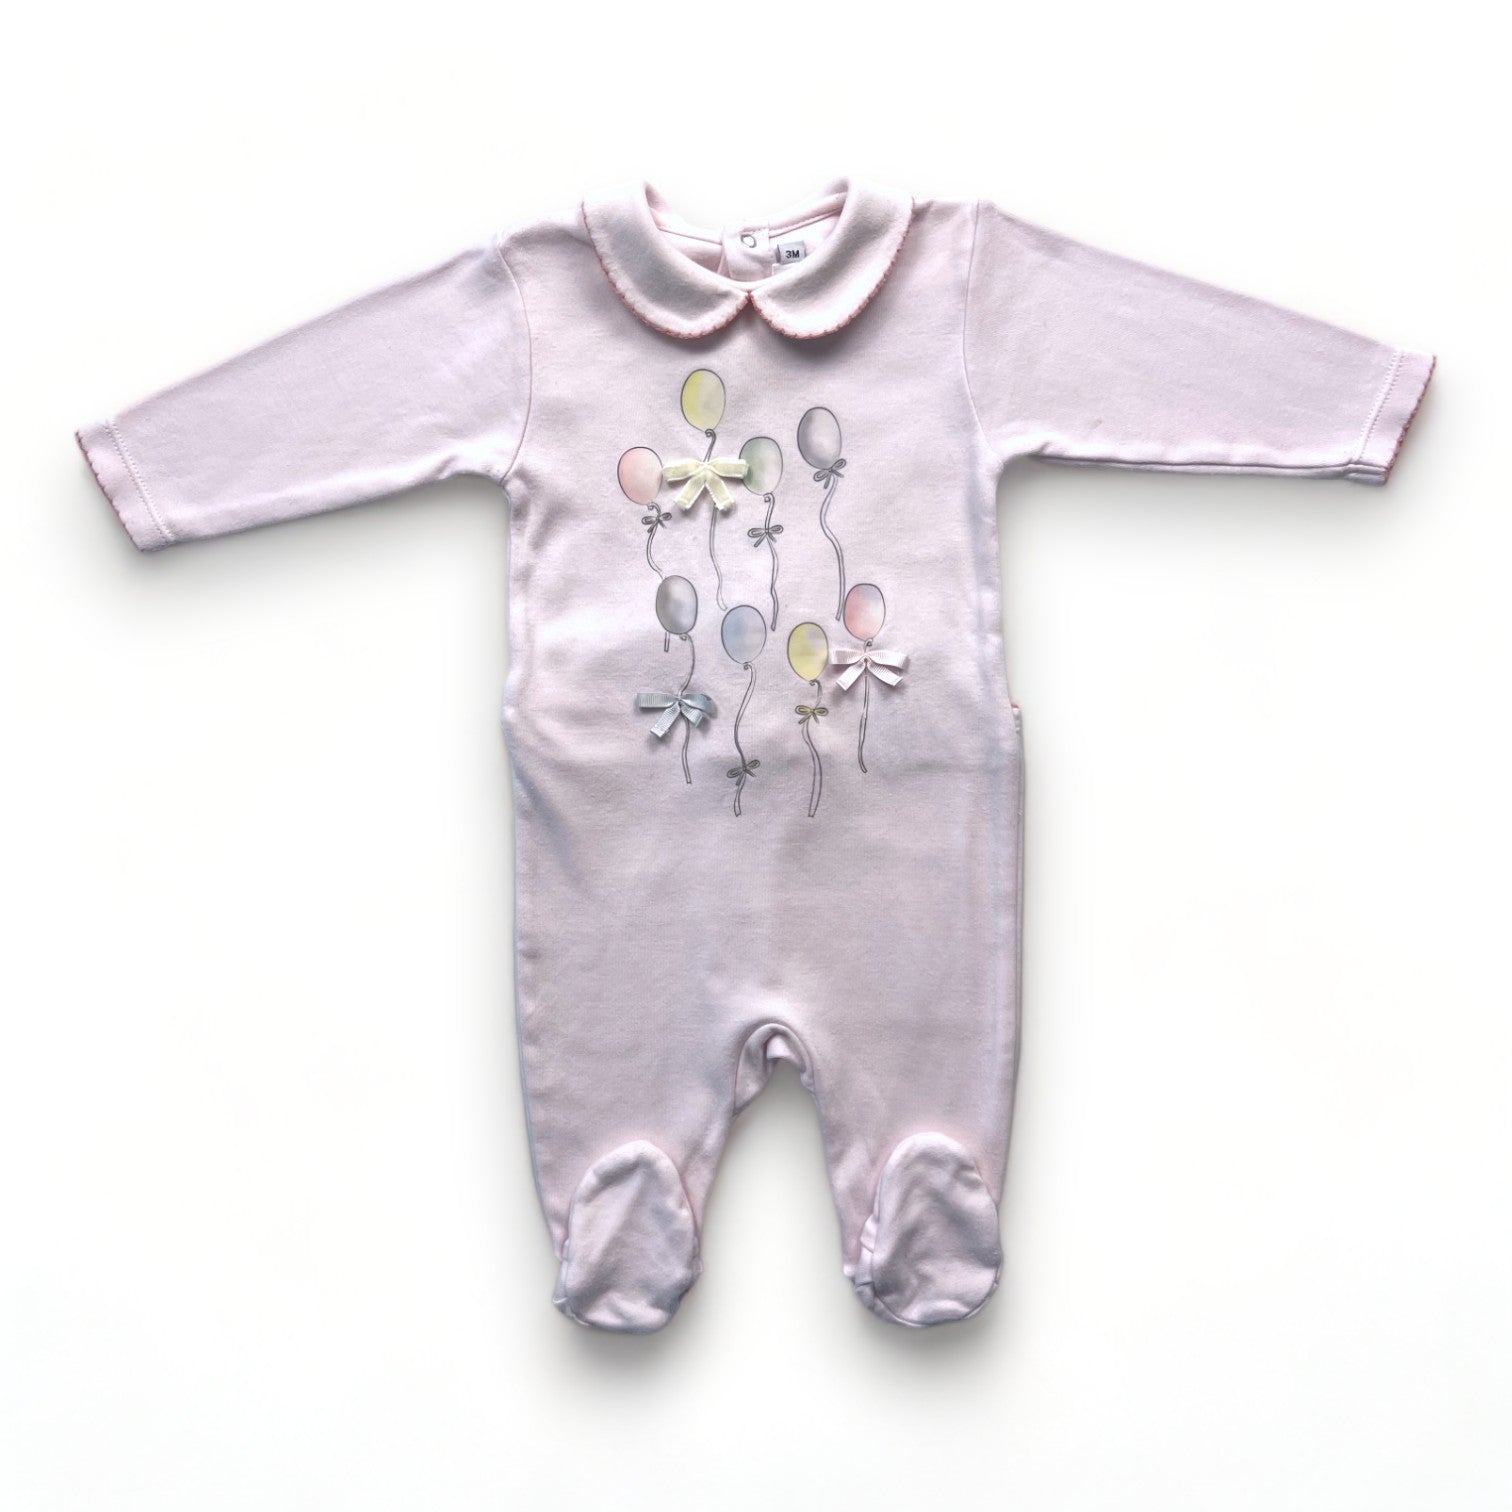 BABY DIOR - Pyjama rose motif ballons - 3 mois